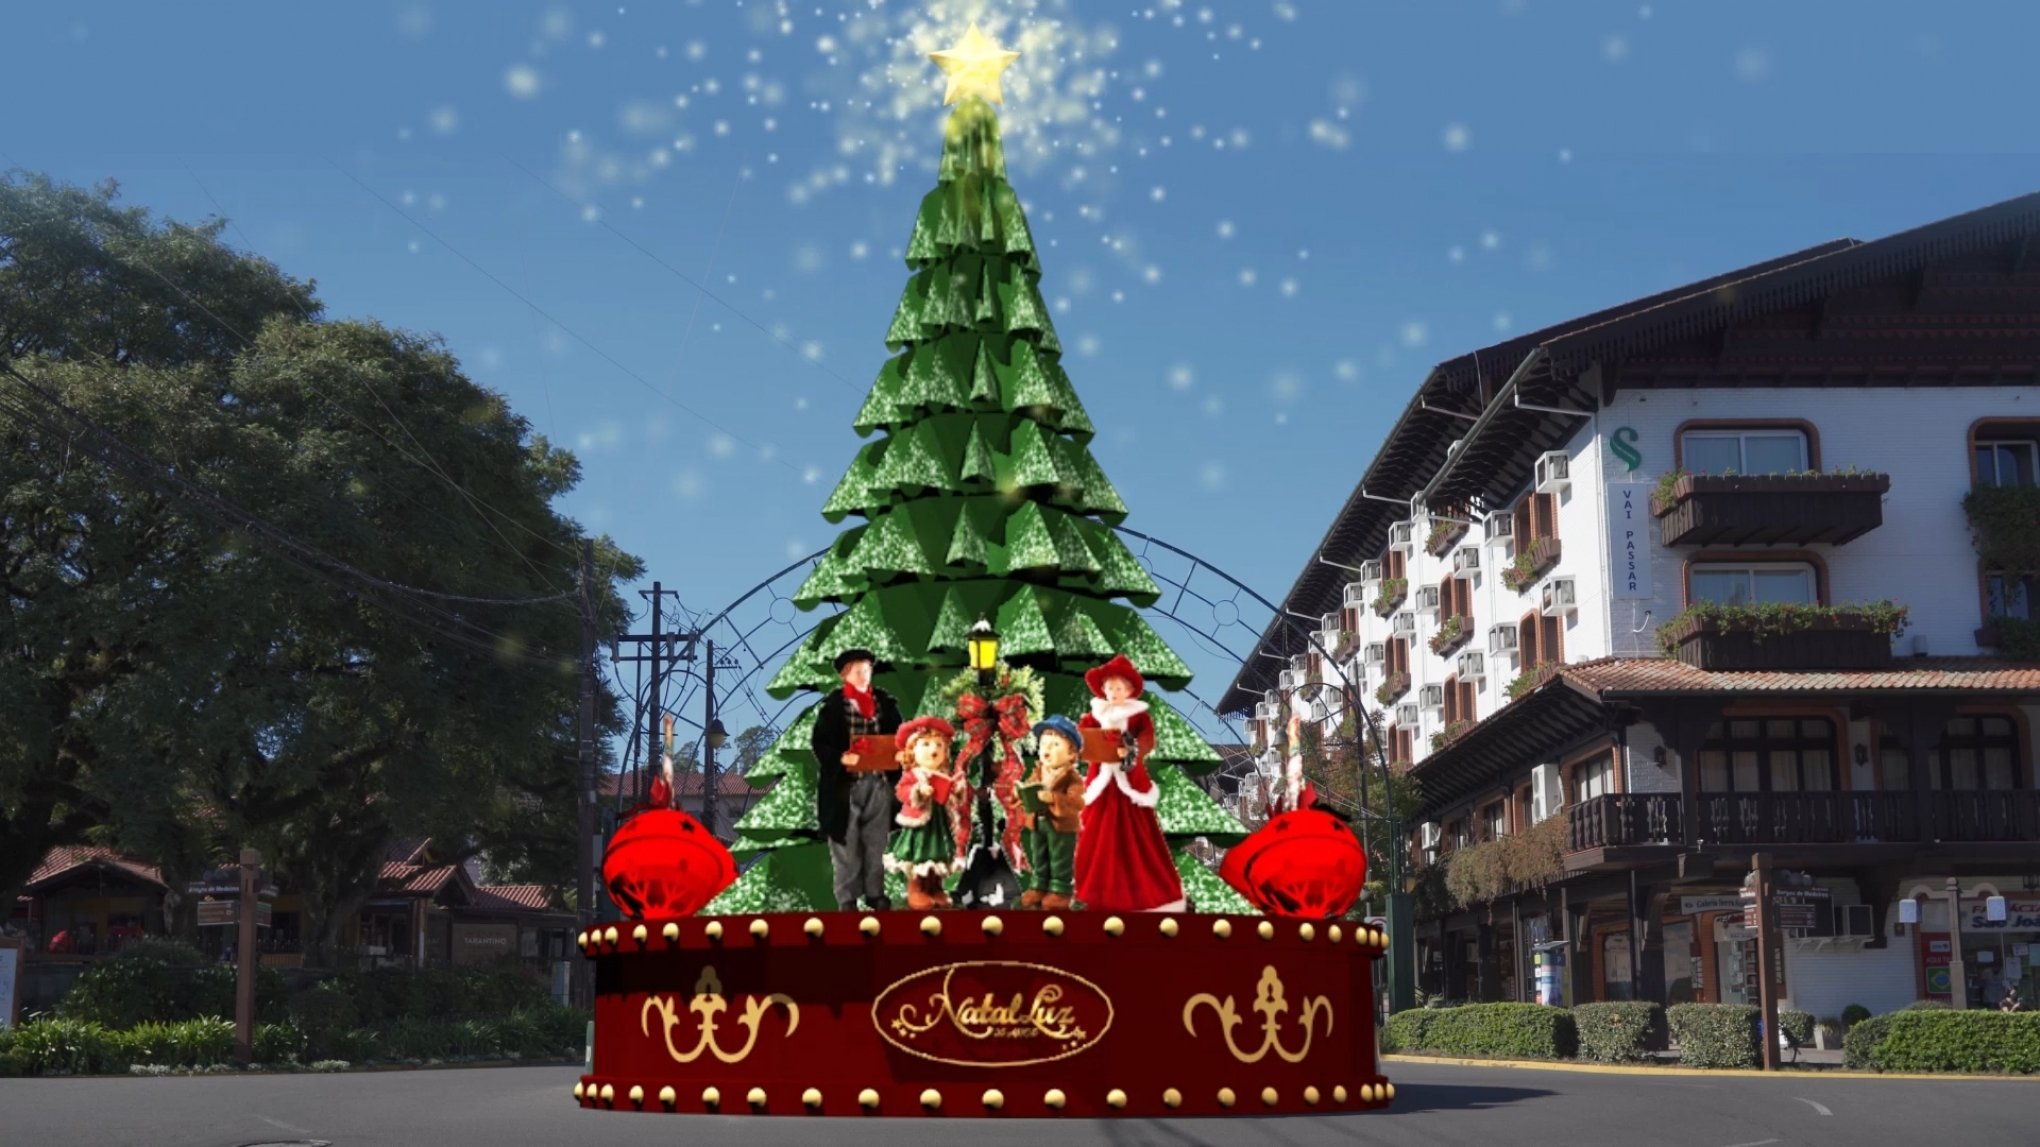 Veja o vídeo: Trupe de Natal apresenta decoração dos 101 dias do Natal Luz  de Gramado - Gramado - Jornal de Gramado